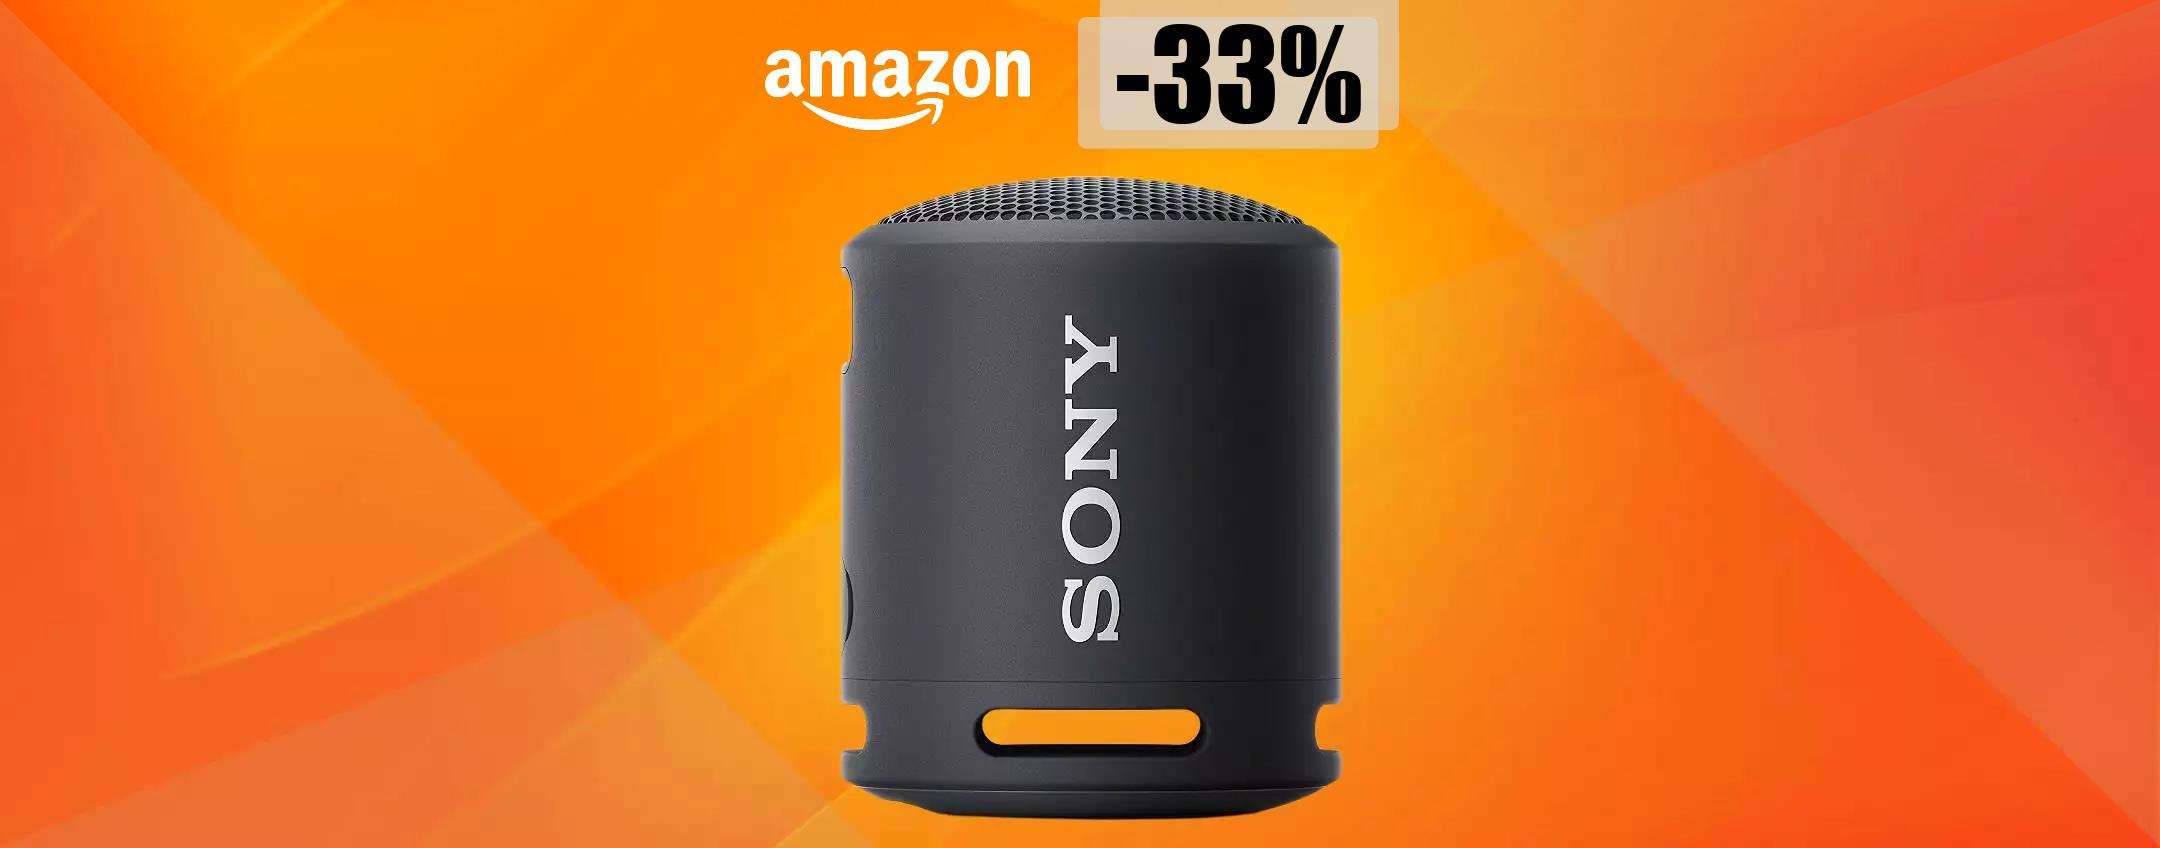 Speaker Sony piccolissimo ma super potente: una BOMBA a soli 39€